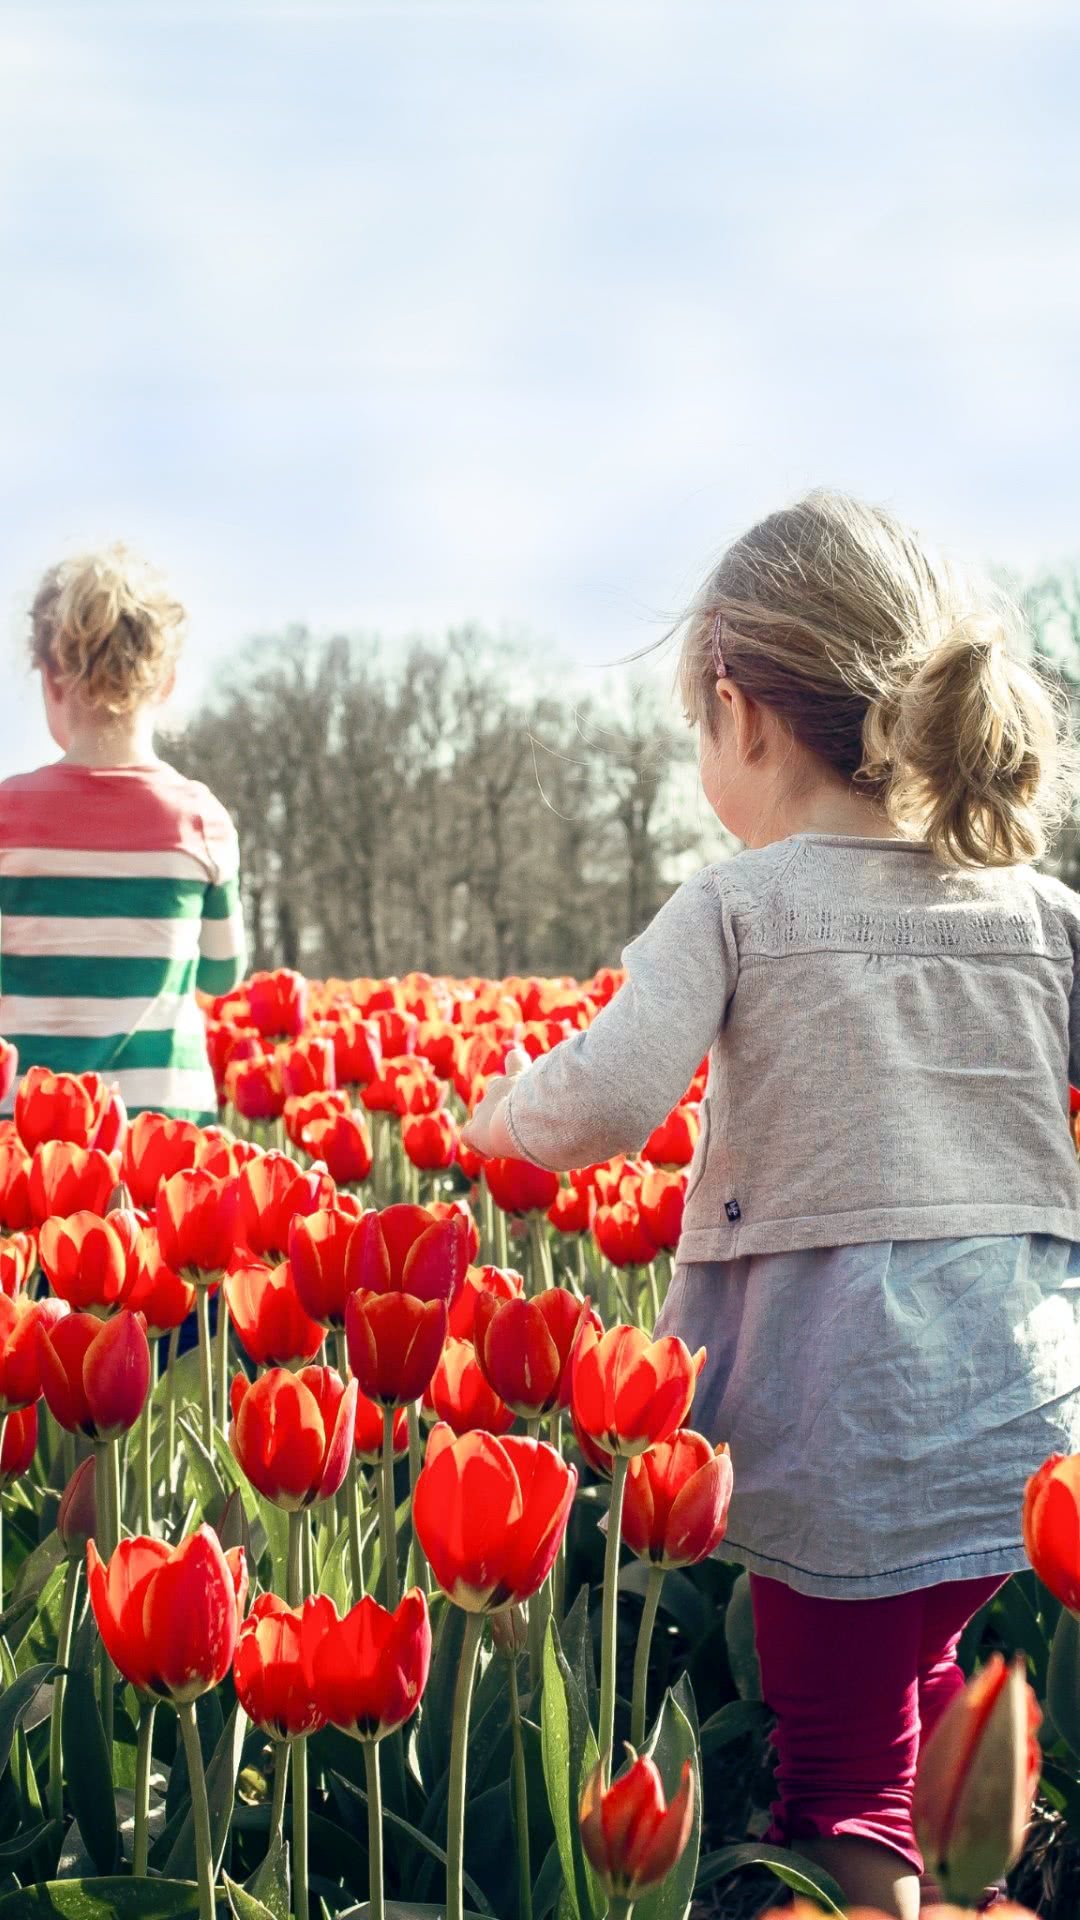 Children in tulips